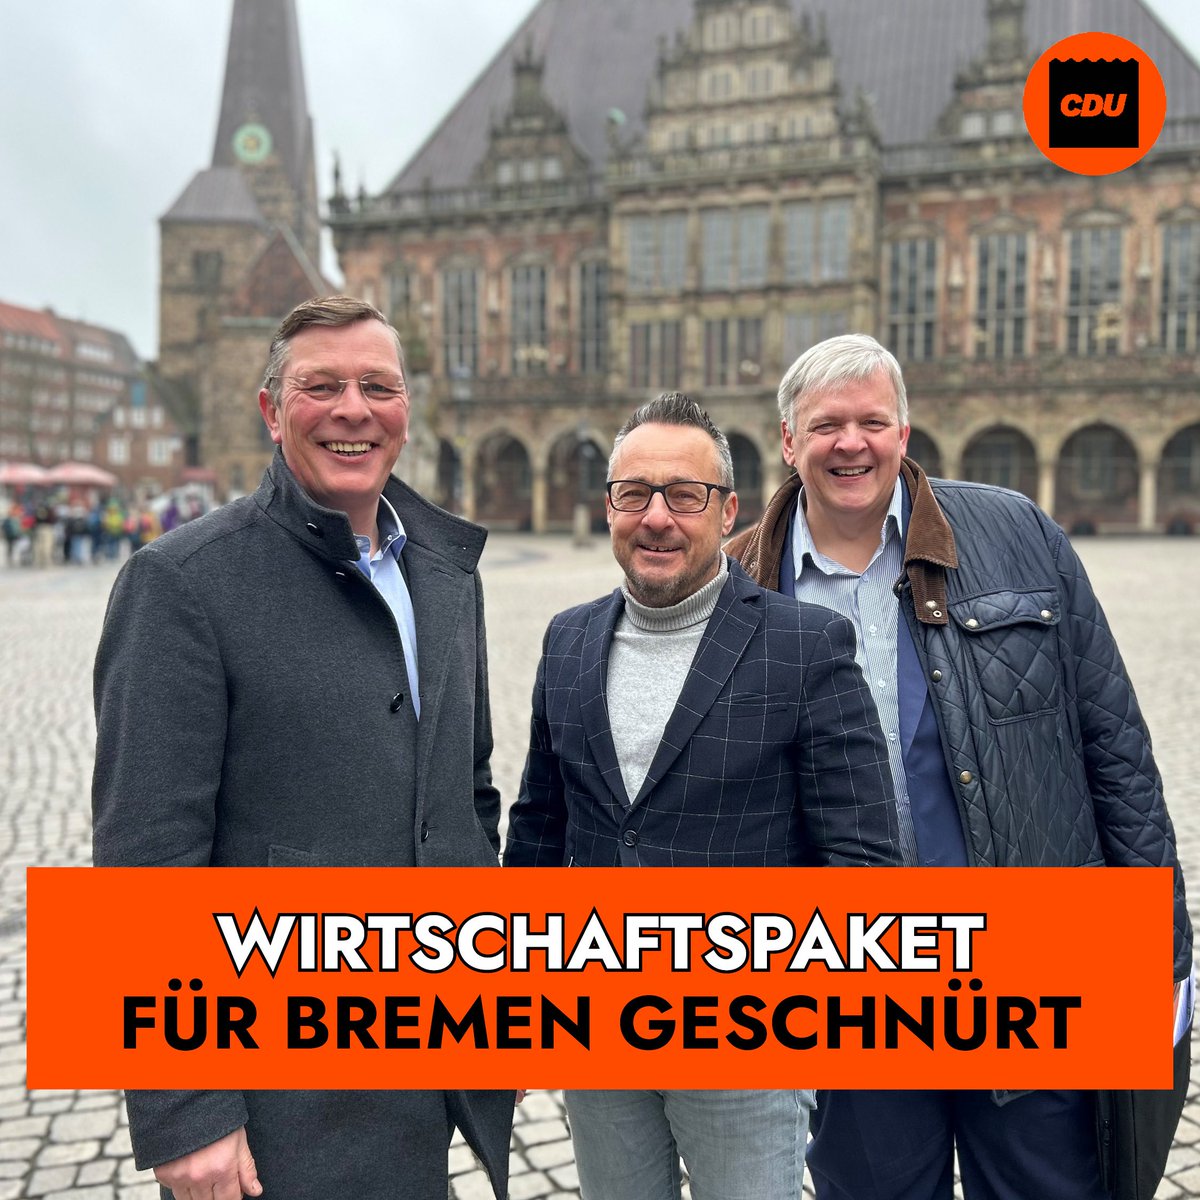 Einigung bei den Verhandlungen zur Finanzierung der Transformation der Bremer Wirtschaft! Die CDU #Bremen hat gemeinsam mit dem Senat ein Wirtschaftspaket geschnürt, das die Zukunft des Bremer Stahlwerks sichern und den Umbau der Wirtschaft vorantreiben soll. (1/2)